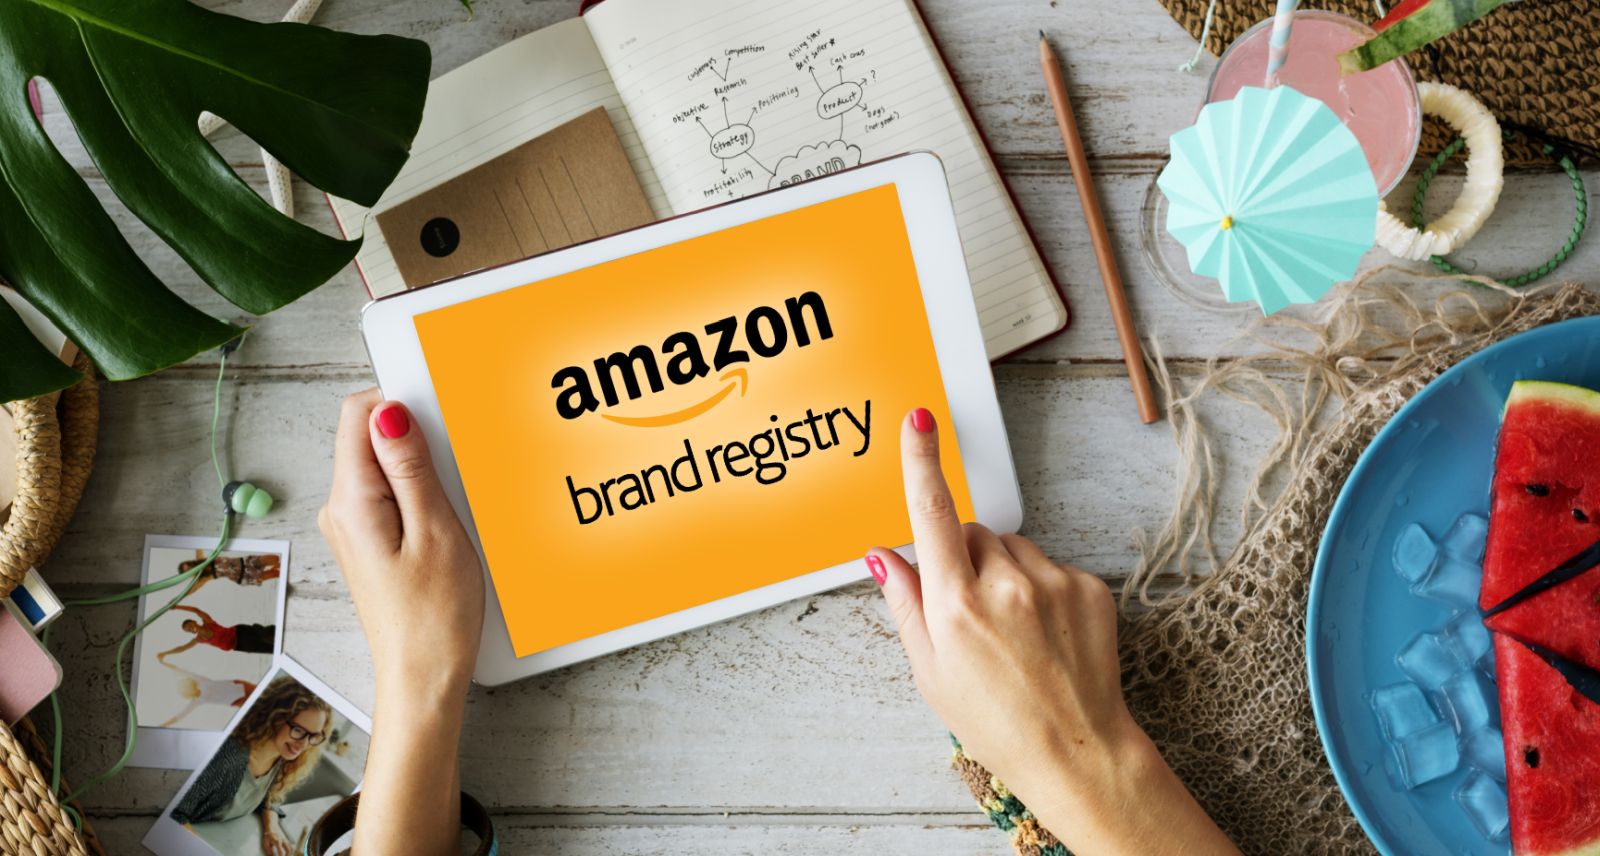 Rejestracja marki na Amazon Brand Registry